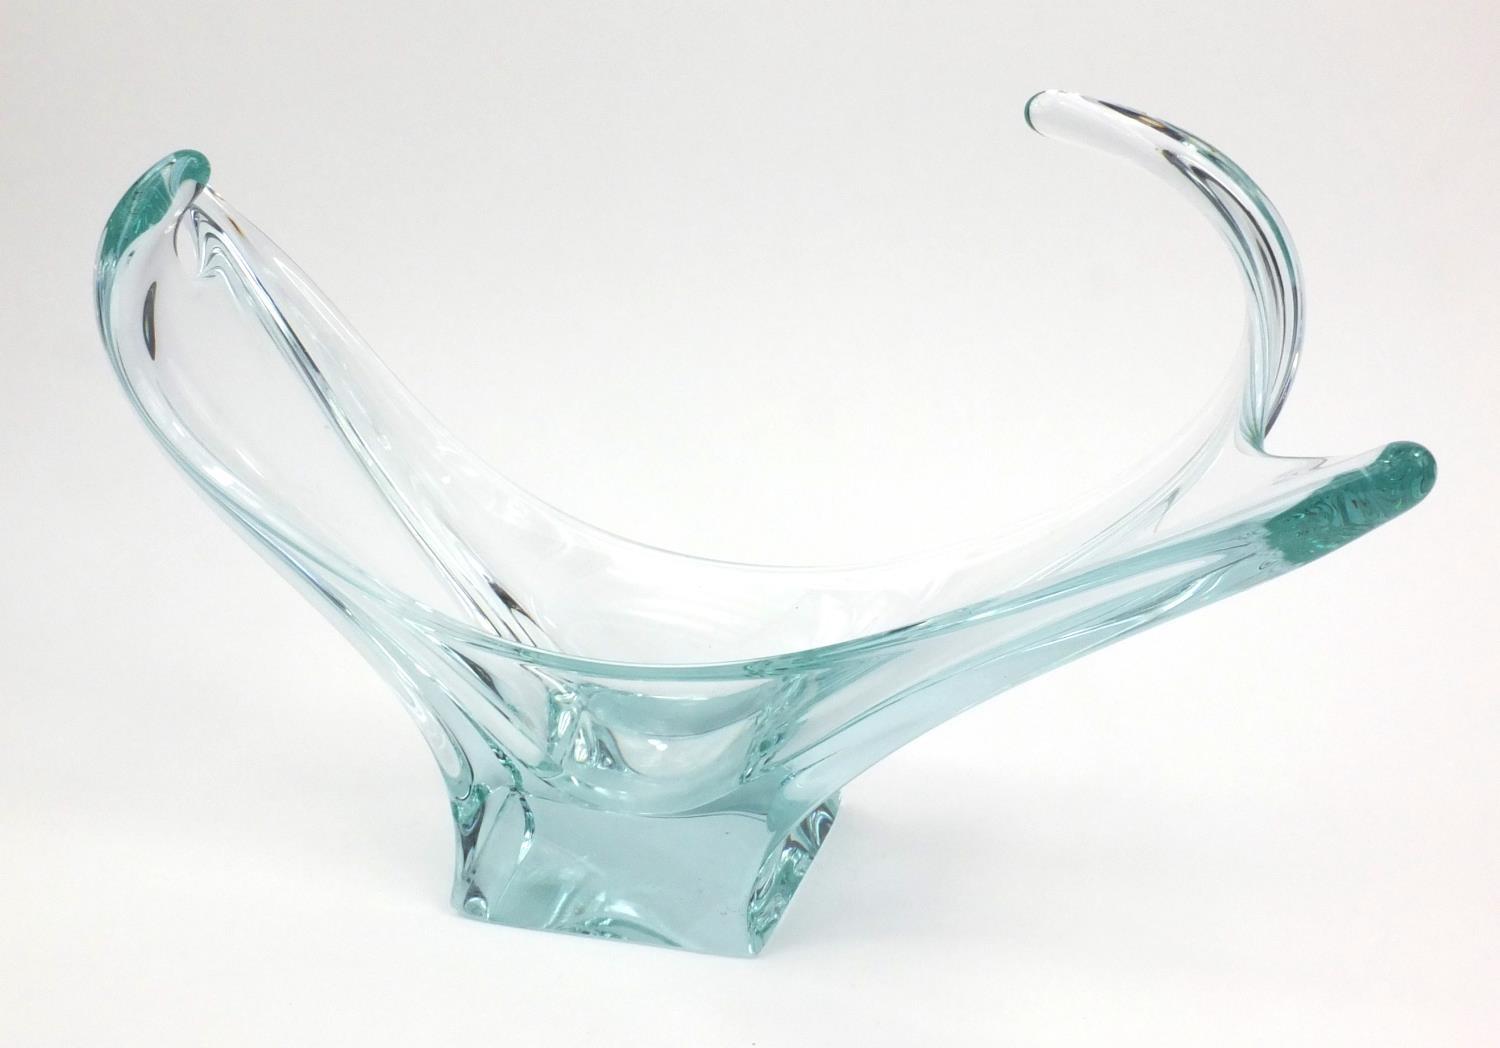 Heavy Pale blue art glass bowl, 50cm long - Image 7 of 7